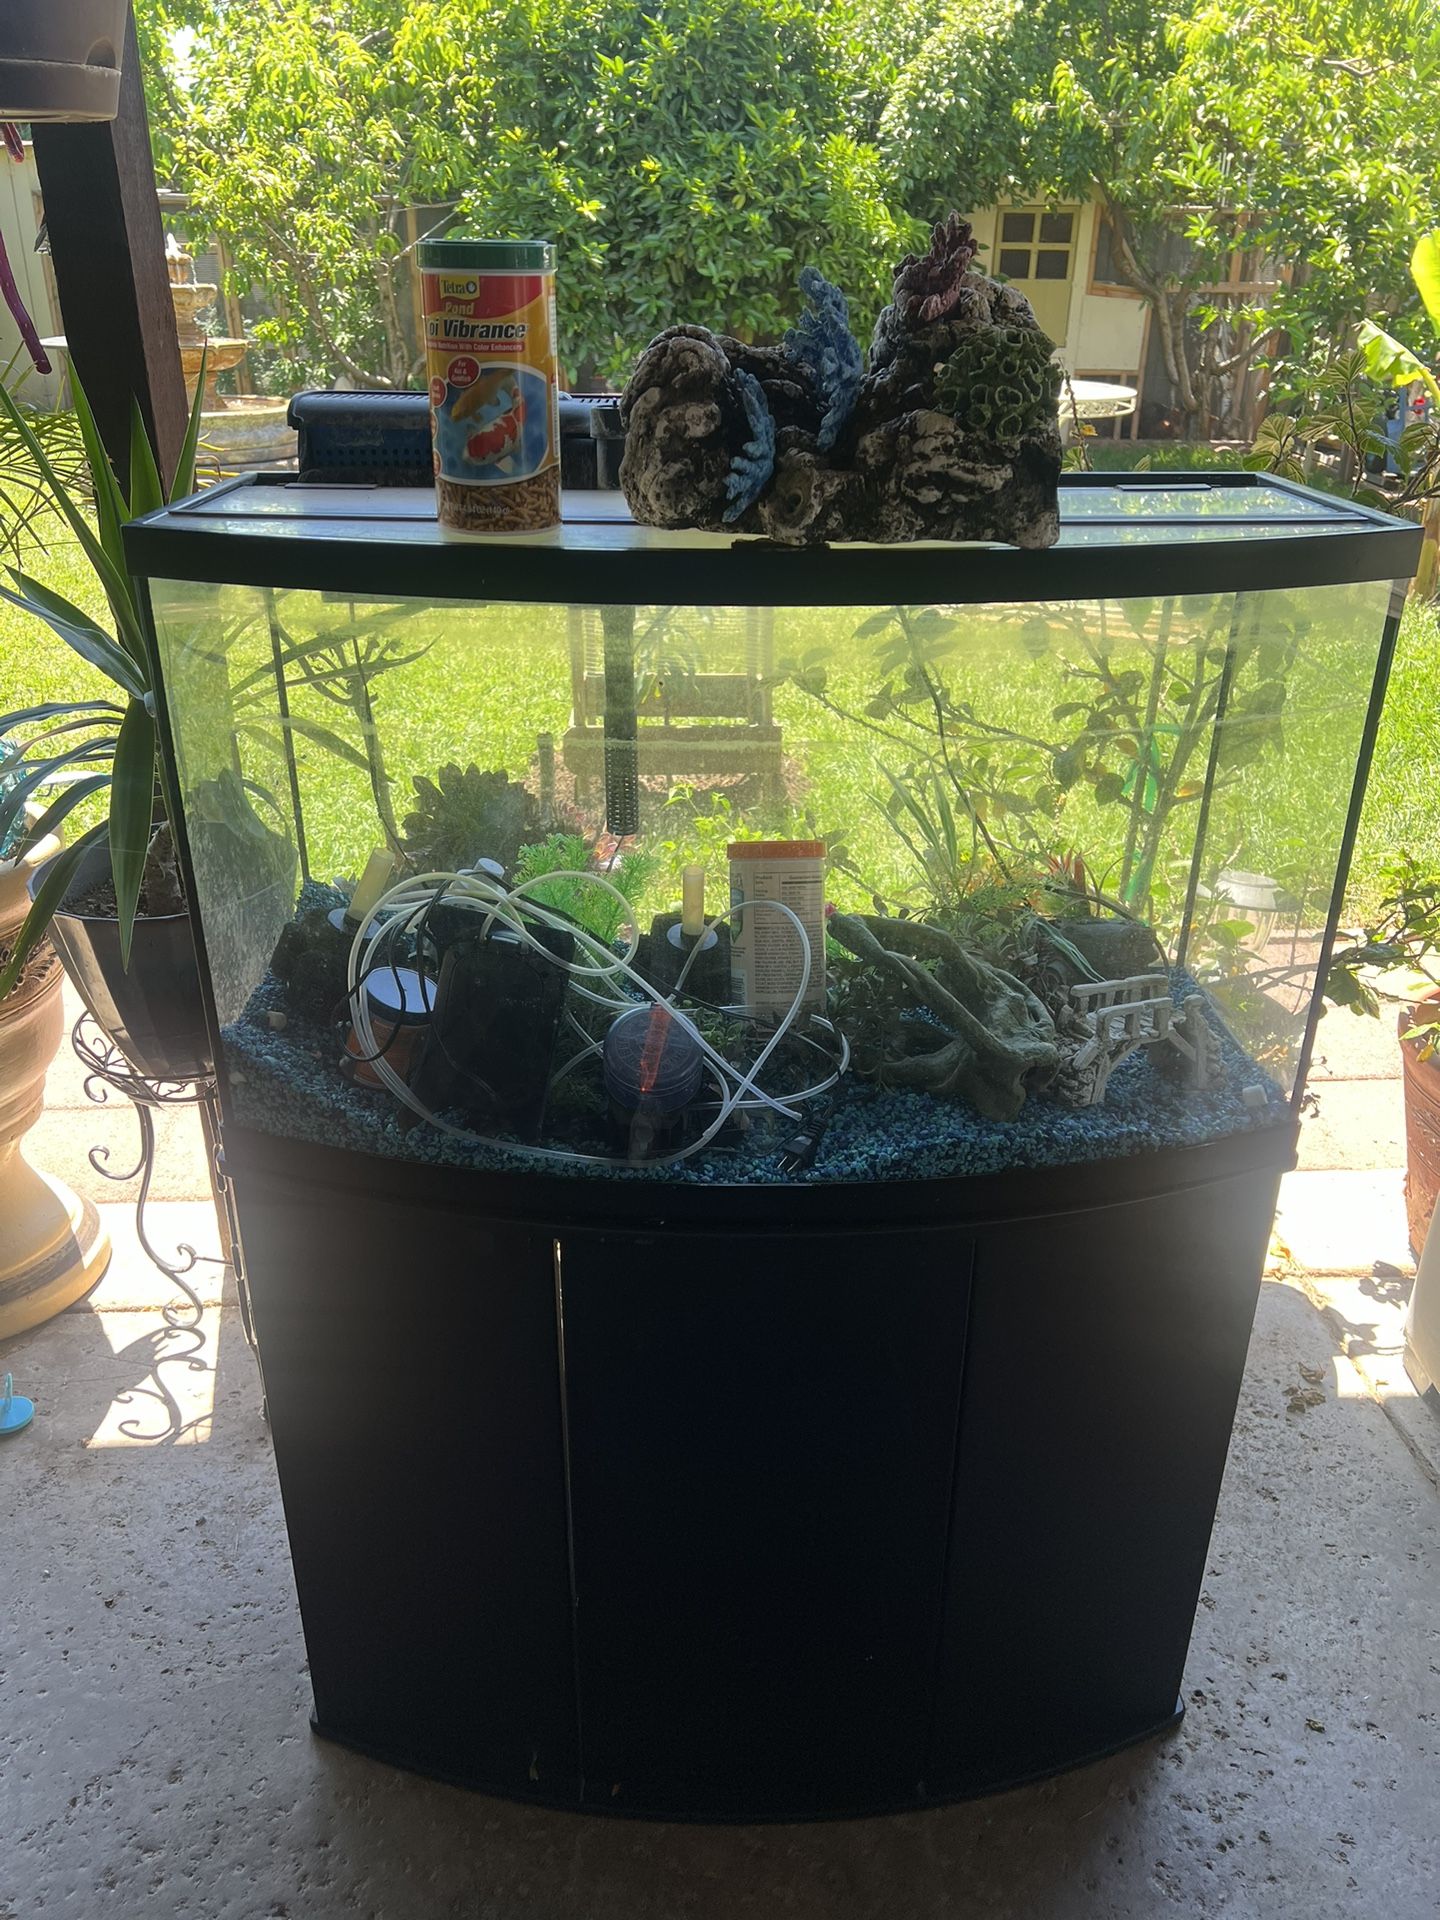 Aquarium Fish Tank 